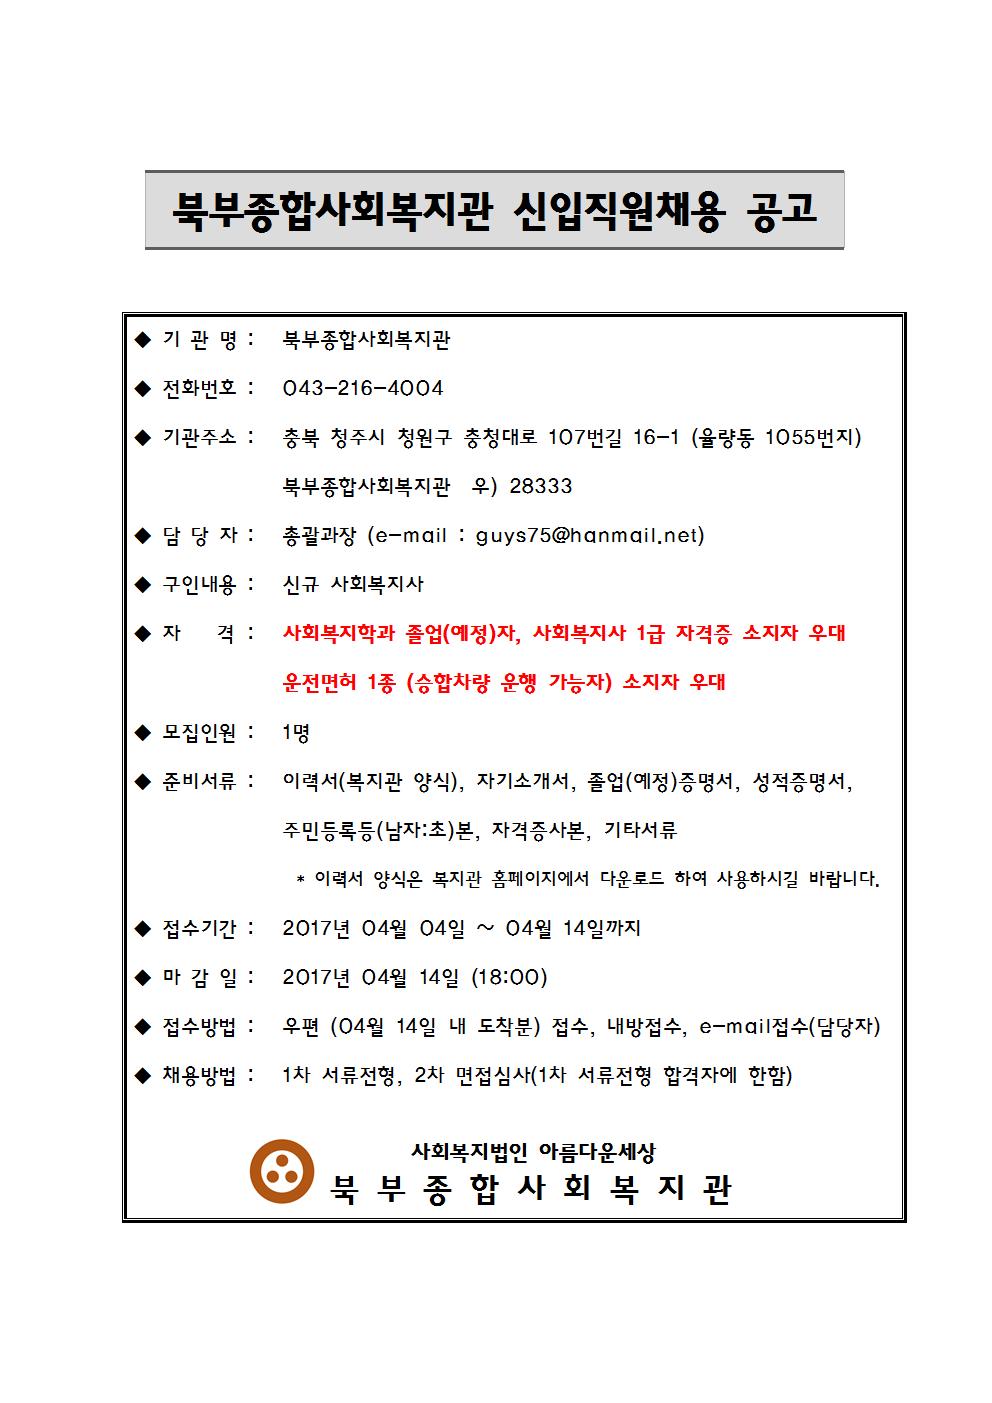 북부종합사회복지관 직원채용공고-2017년.jpg